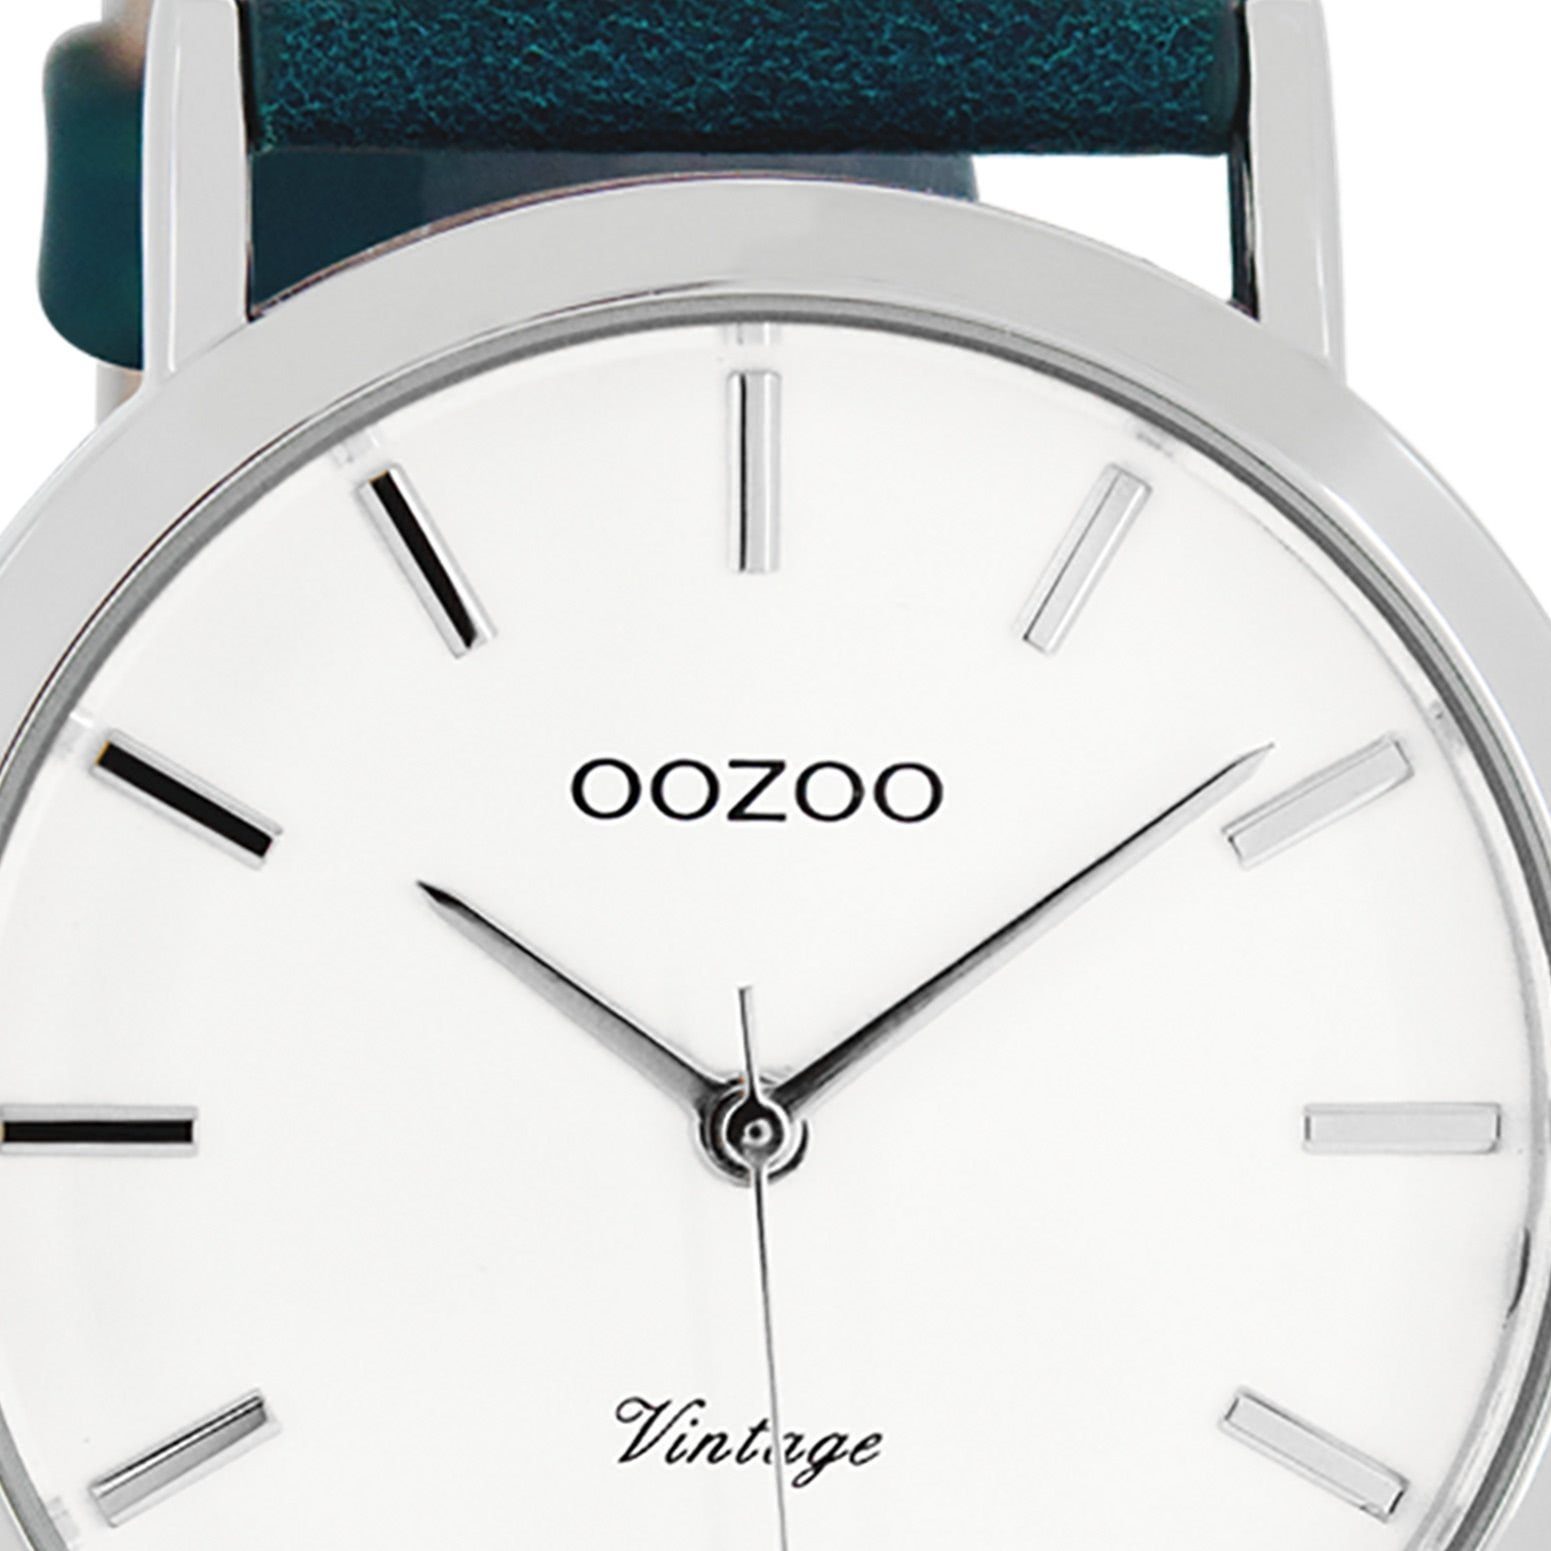 Series, (ca. groß Herrenuhr Herren Oozoo Vintage rund, Lederarmband, OOZOO Armbanduhr Quarzuhr Fashion-Style 45mm)